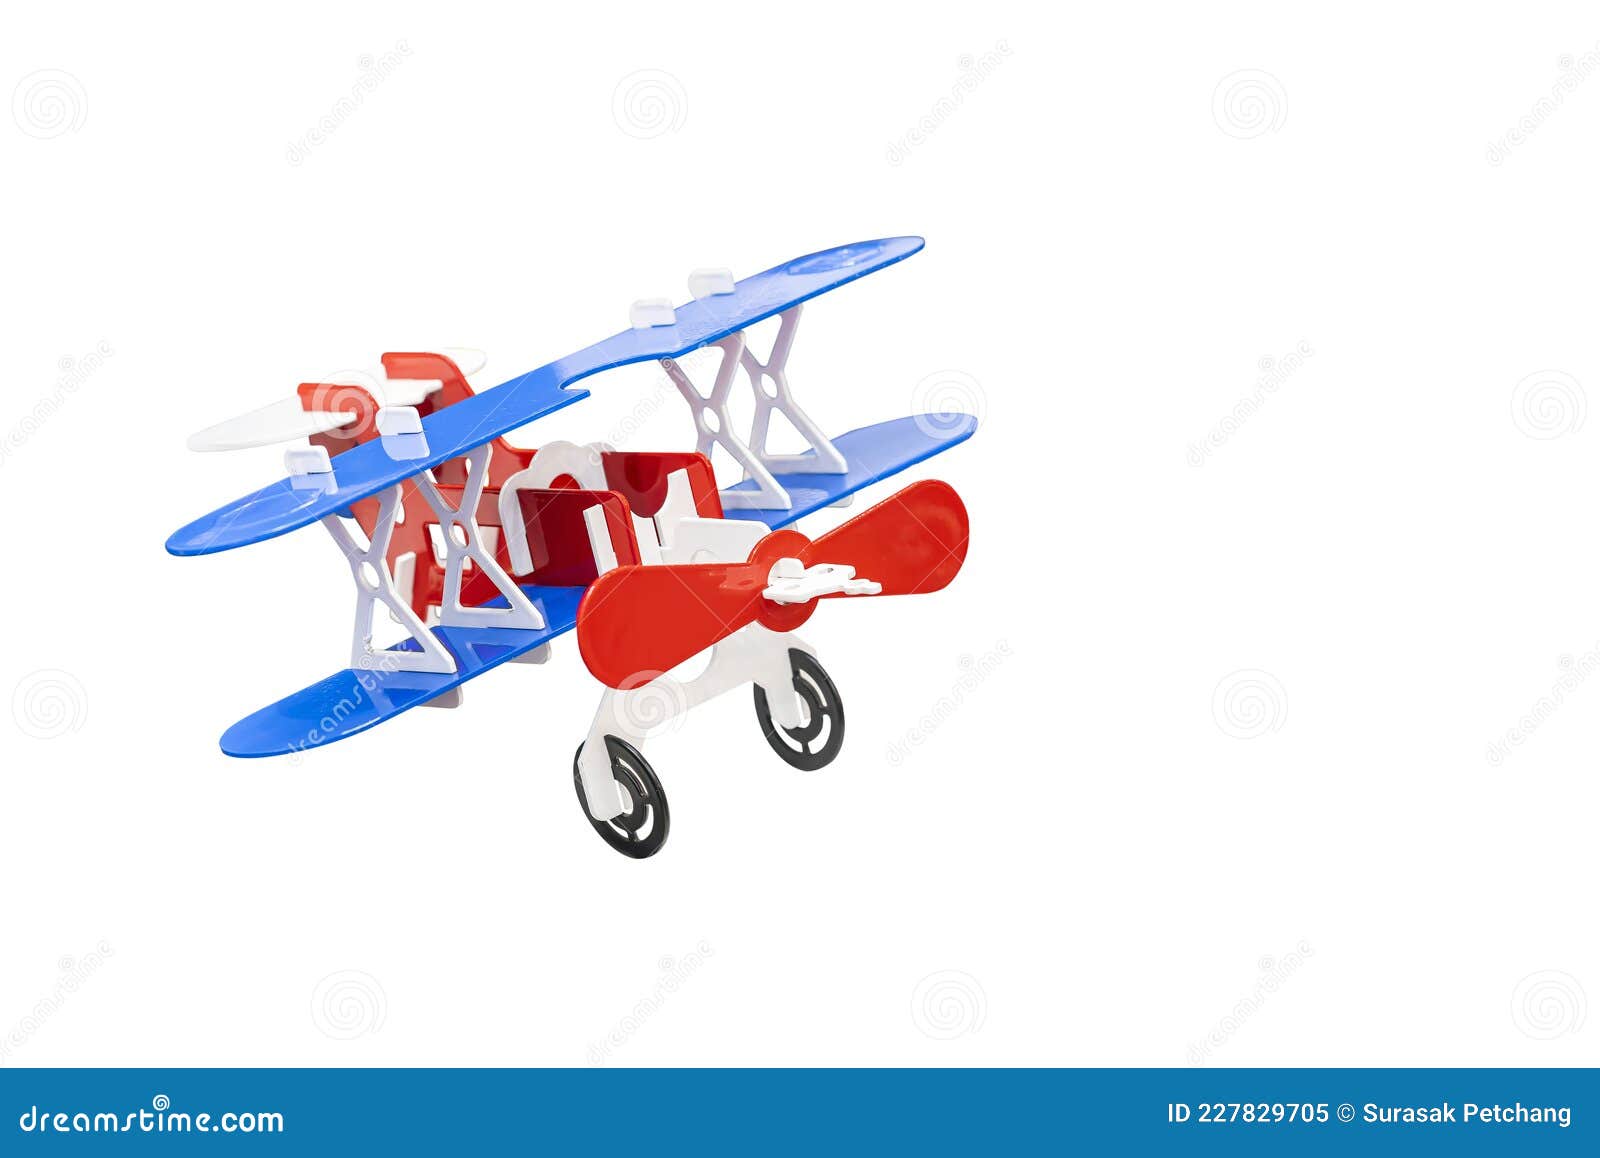 Avion de juguete azul, blanco y rojo